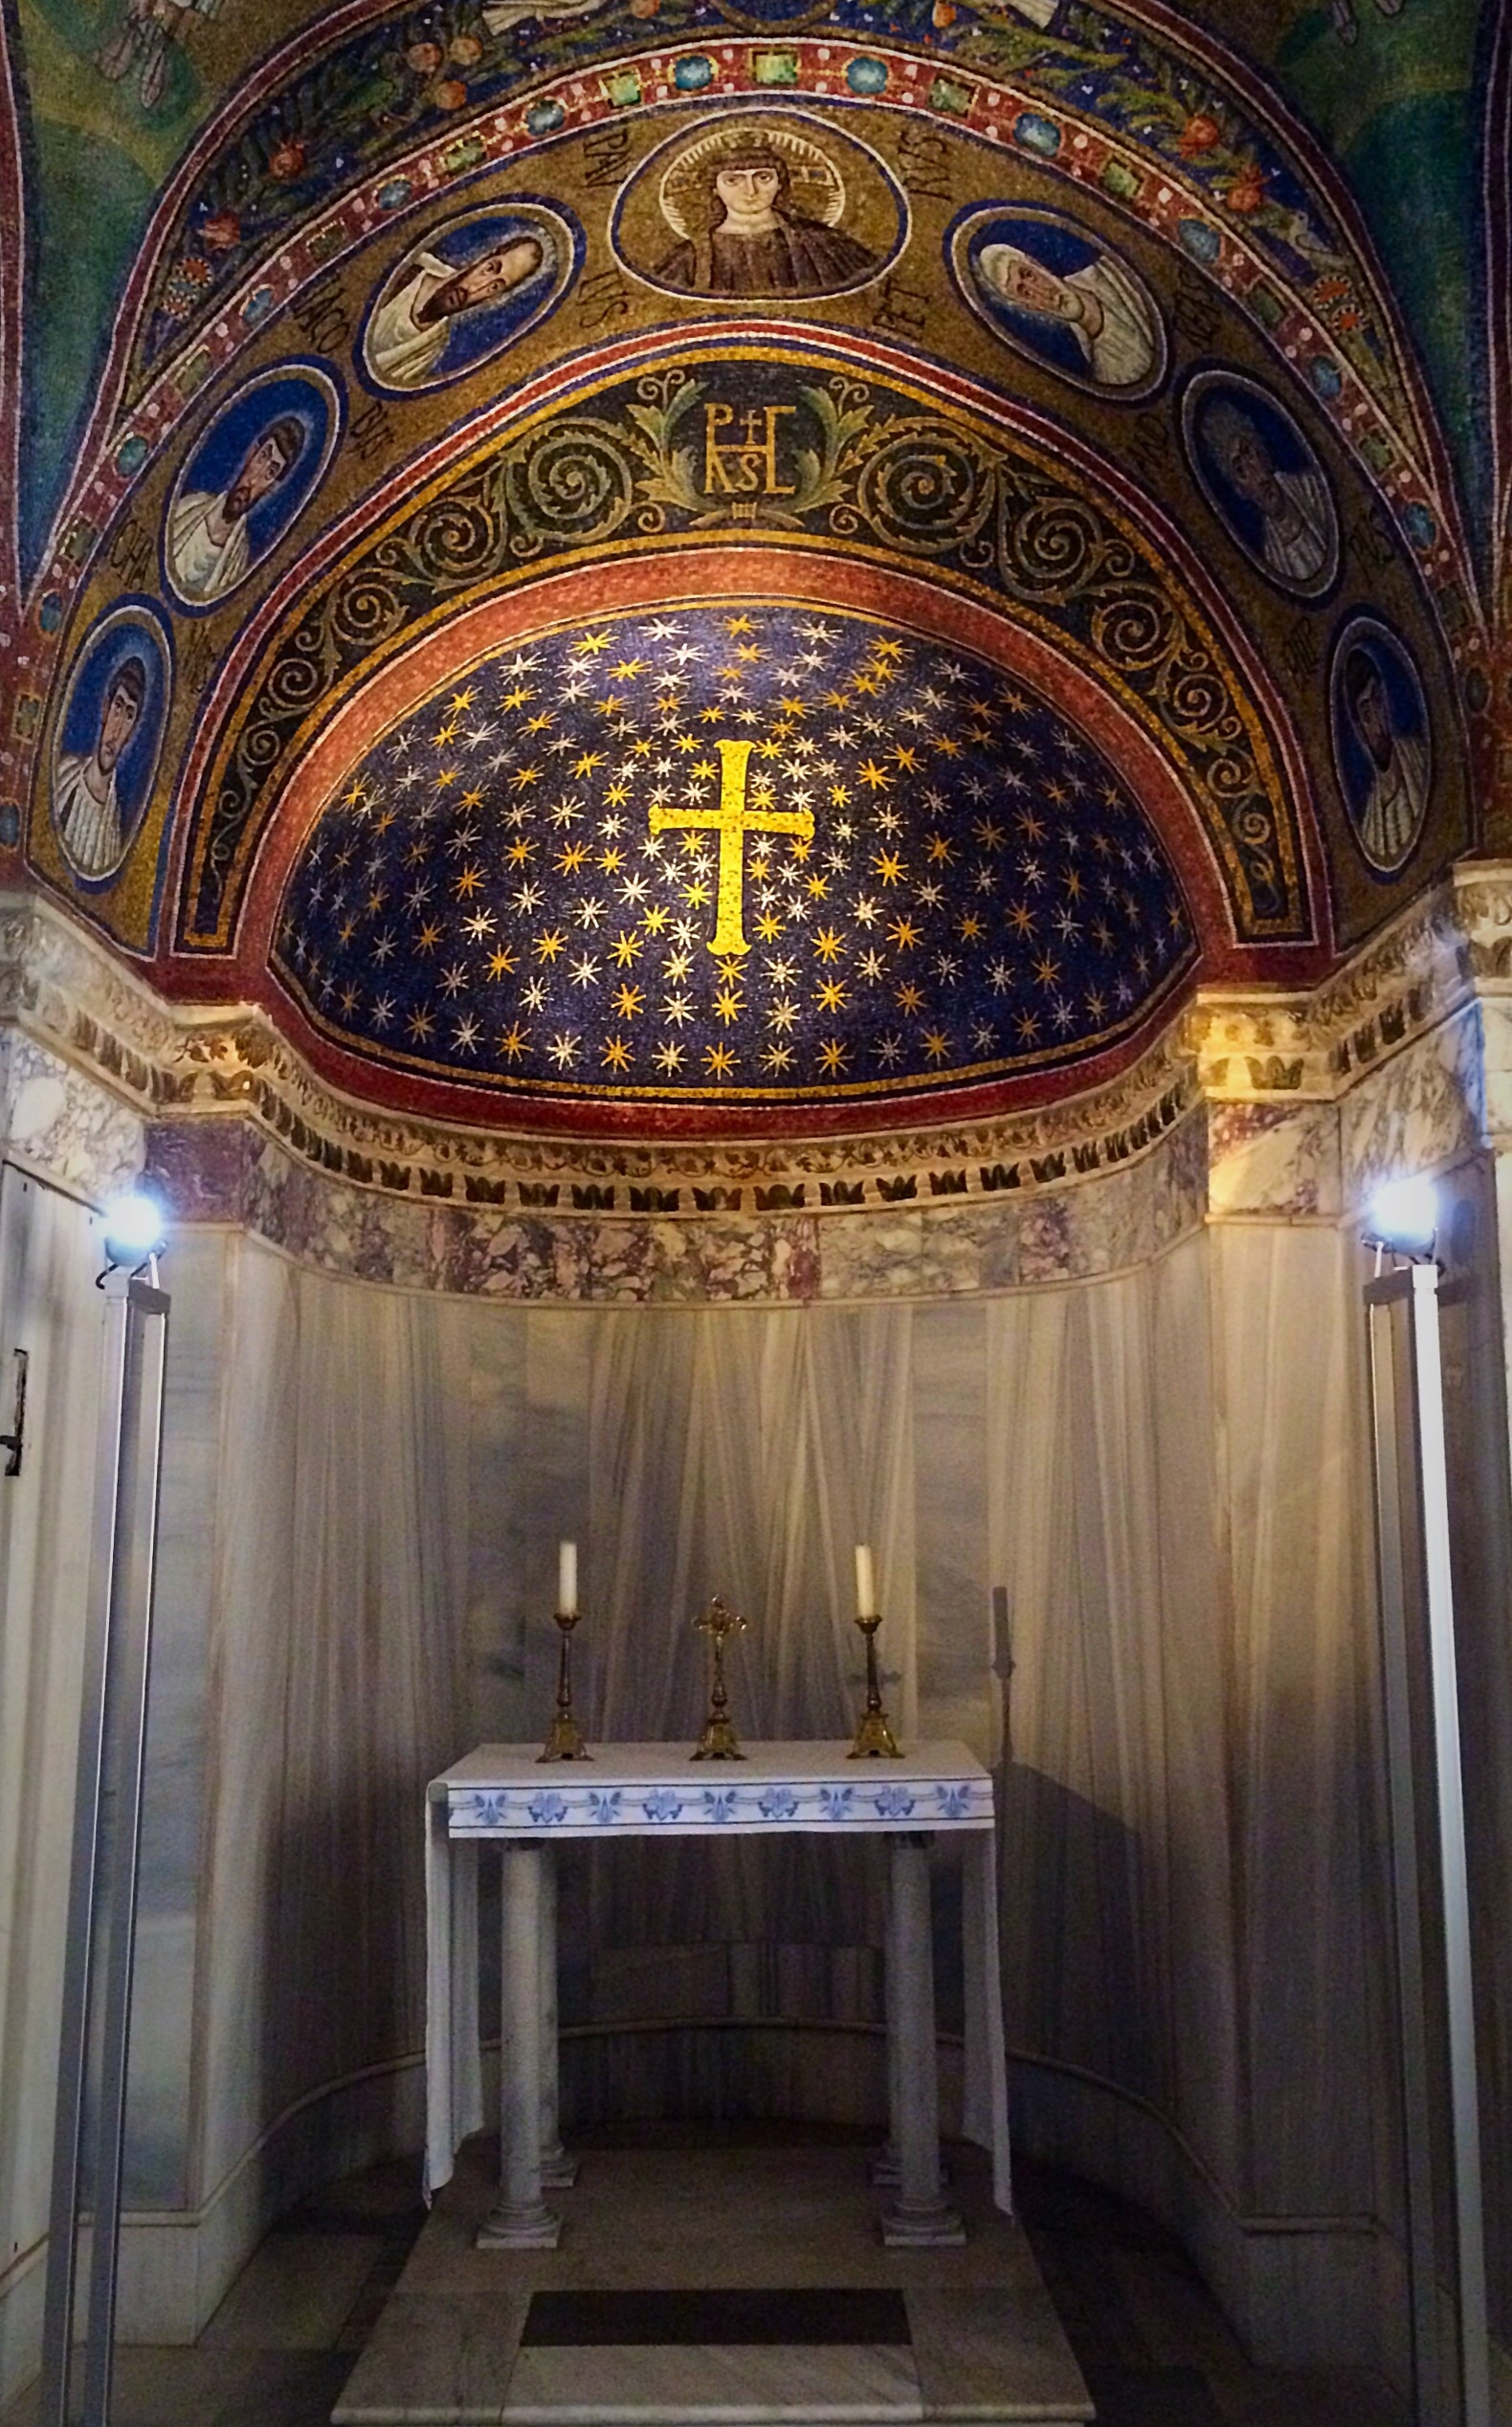 Oltar s malbou krize v kupoli, 6. stoleti